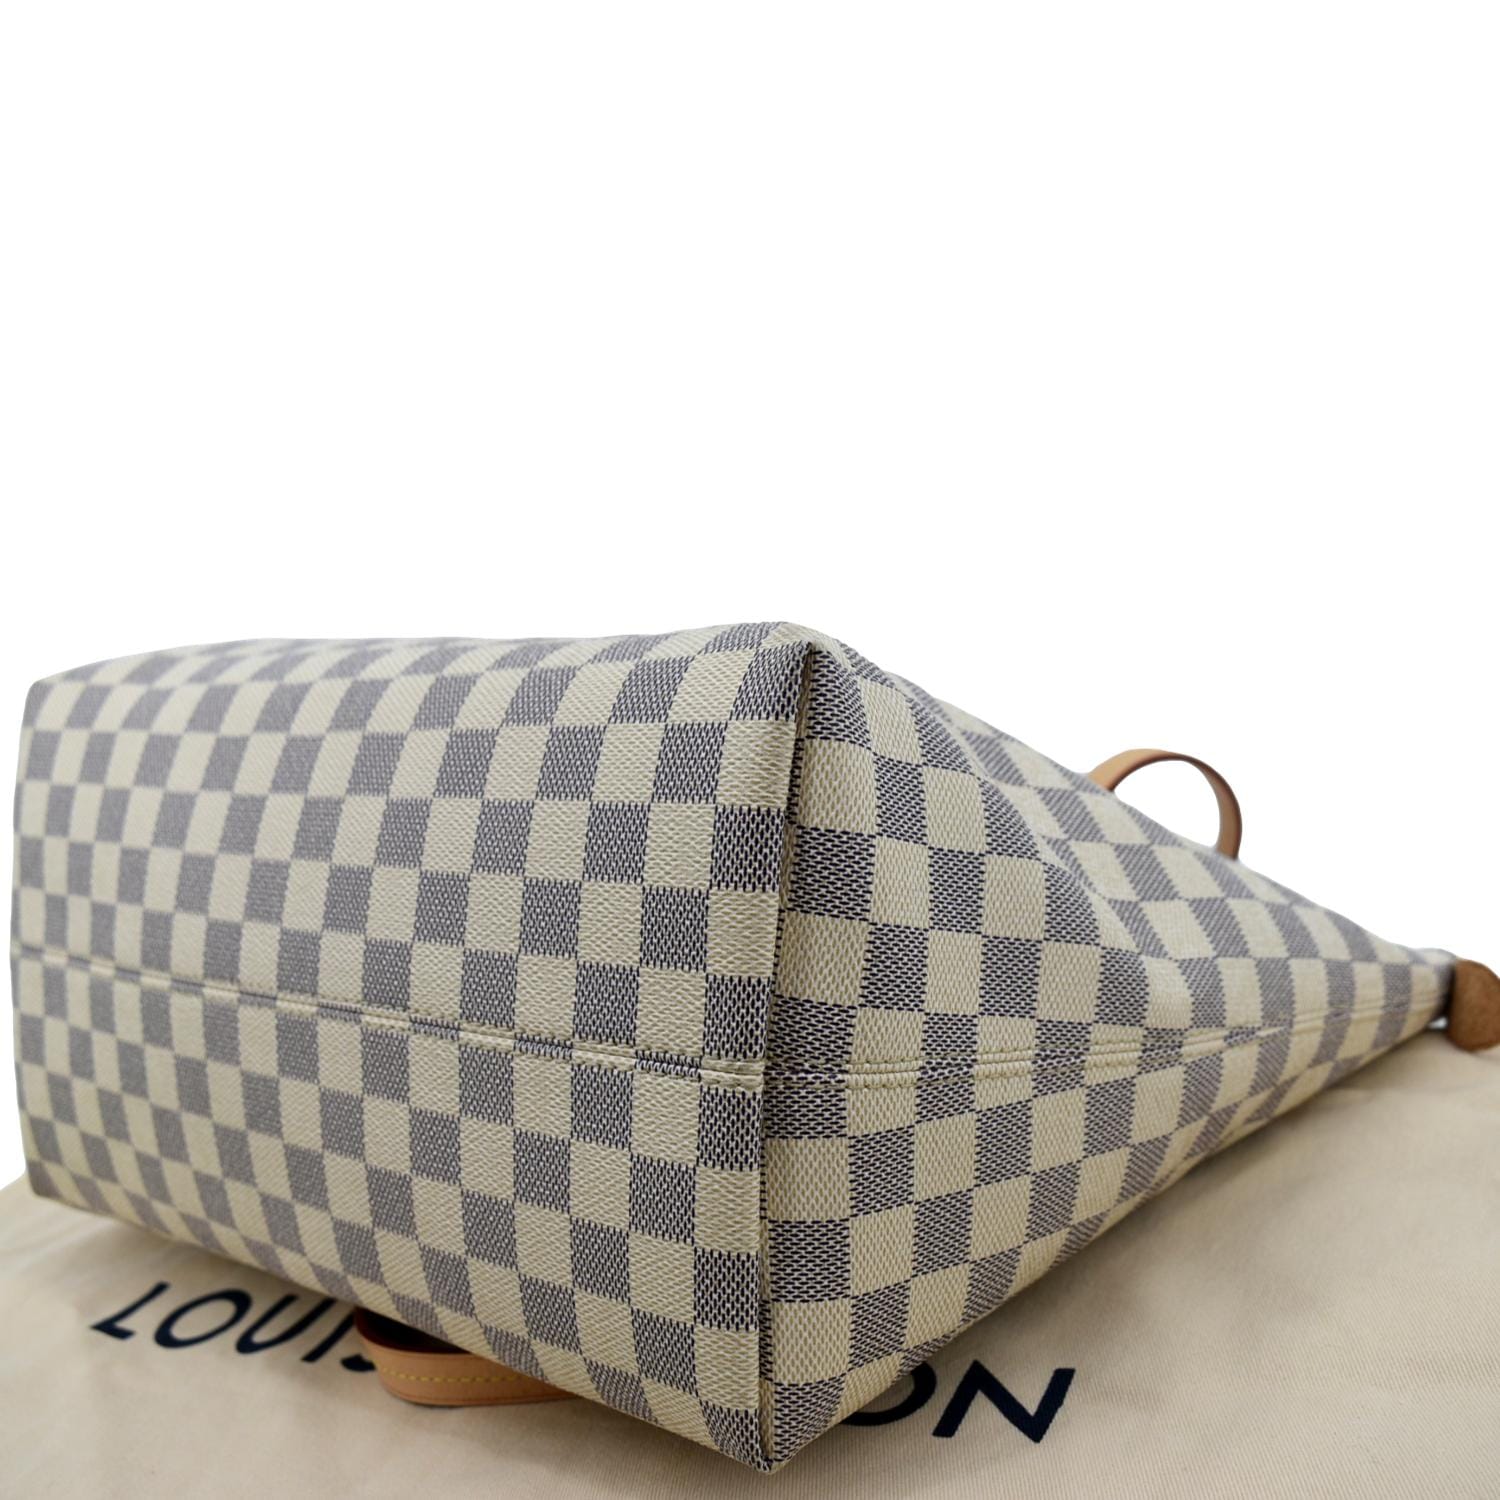 White Louis Vuitton Damier Azur Iena Shoulder Bag – Designer Revival